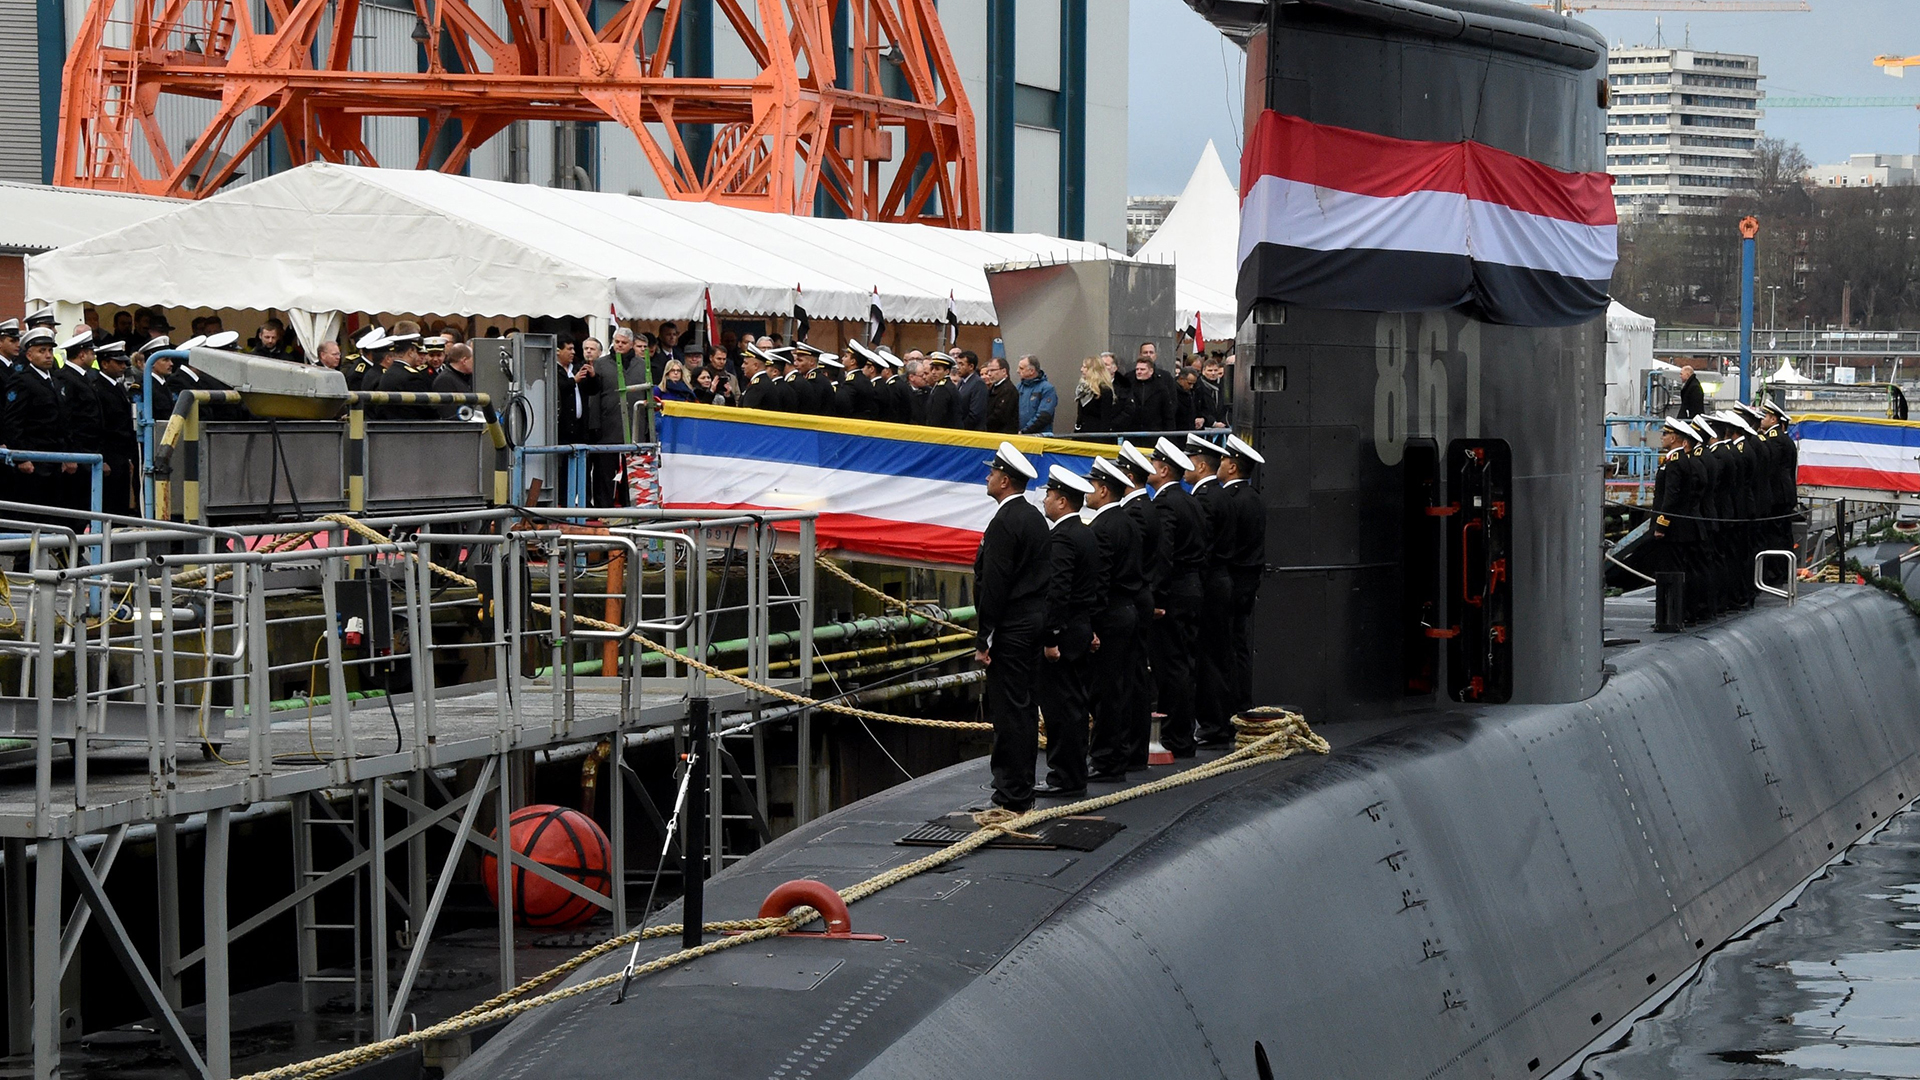  Besatzungsmitglieder stehen auf der Werft von ThyssenKrupp Marine Systems bei der Übergabe eines neuen U-Bootes an die Marine der Arabischen Republik Ägypten auf dem Boot "S-41". | dpa